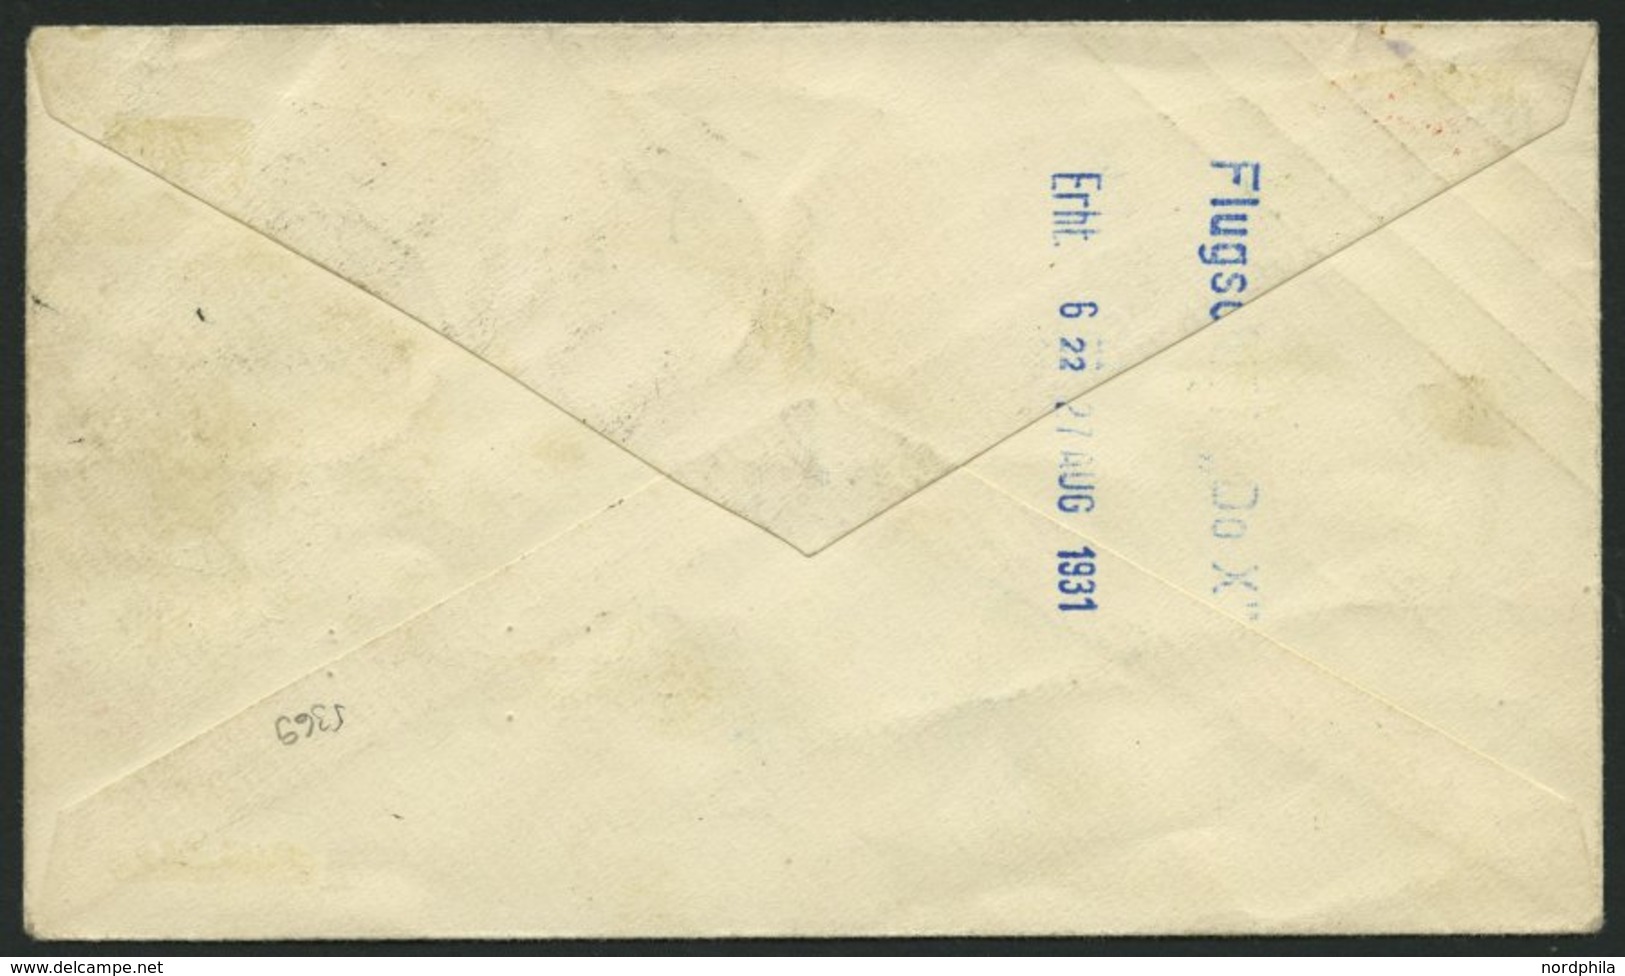 DO-X LUFTPOST DO X2.001.CH BRIEF, 31.08.1931, DO X 2, Postabgabe Trimmis, Blauer Zweikreiser VOLO DI COLLAUDO, Prachtbri - Briefe U. Dokumente